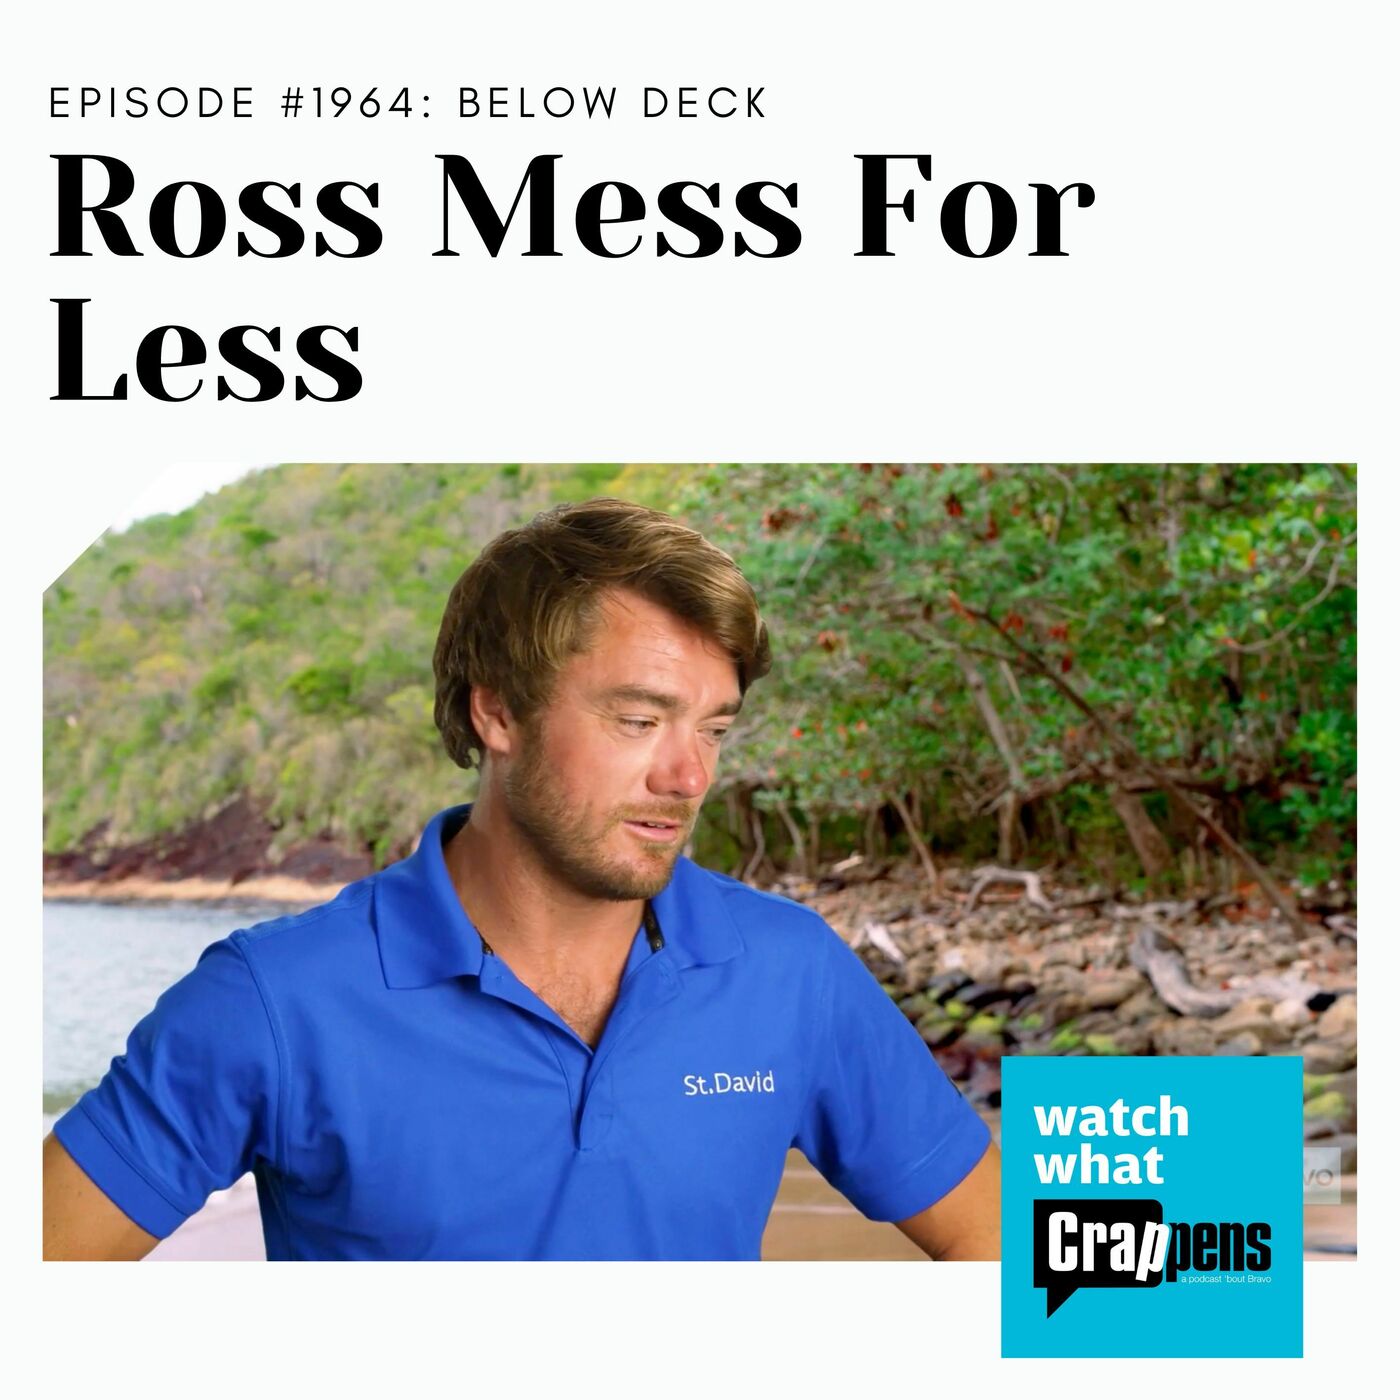 BELOW DECK: Ross Mess For Less